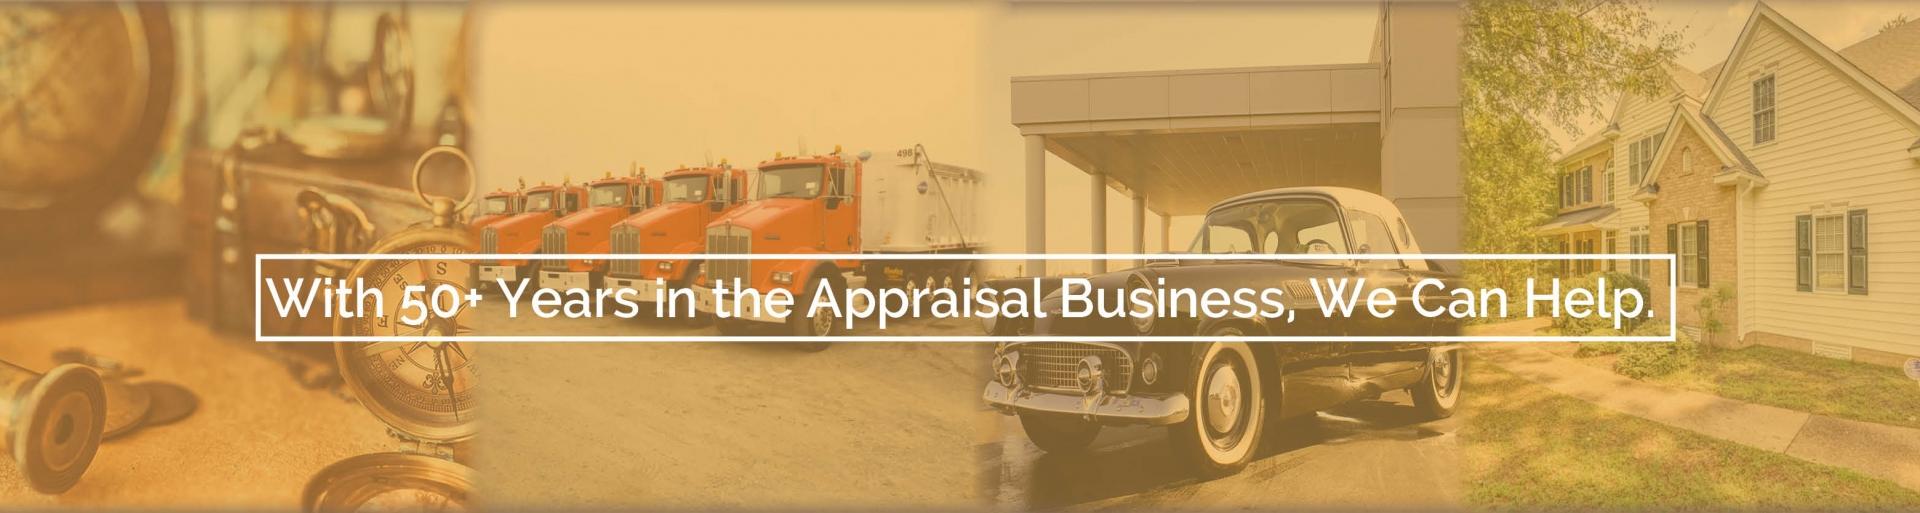 Appraisal webpage sliders rev